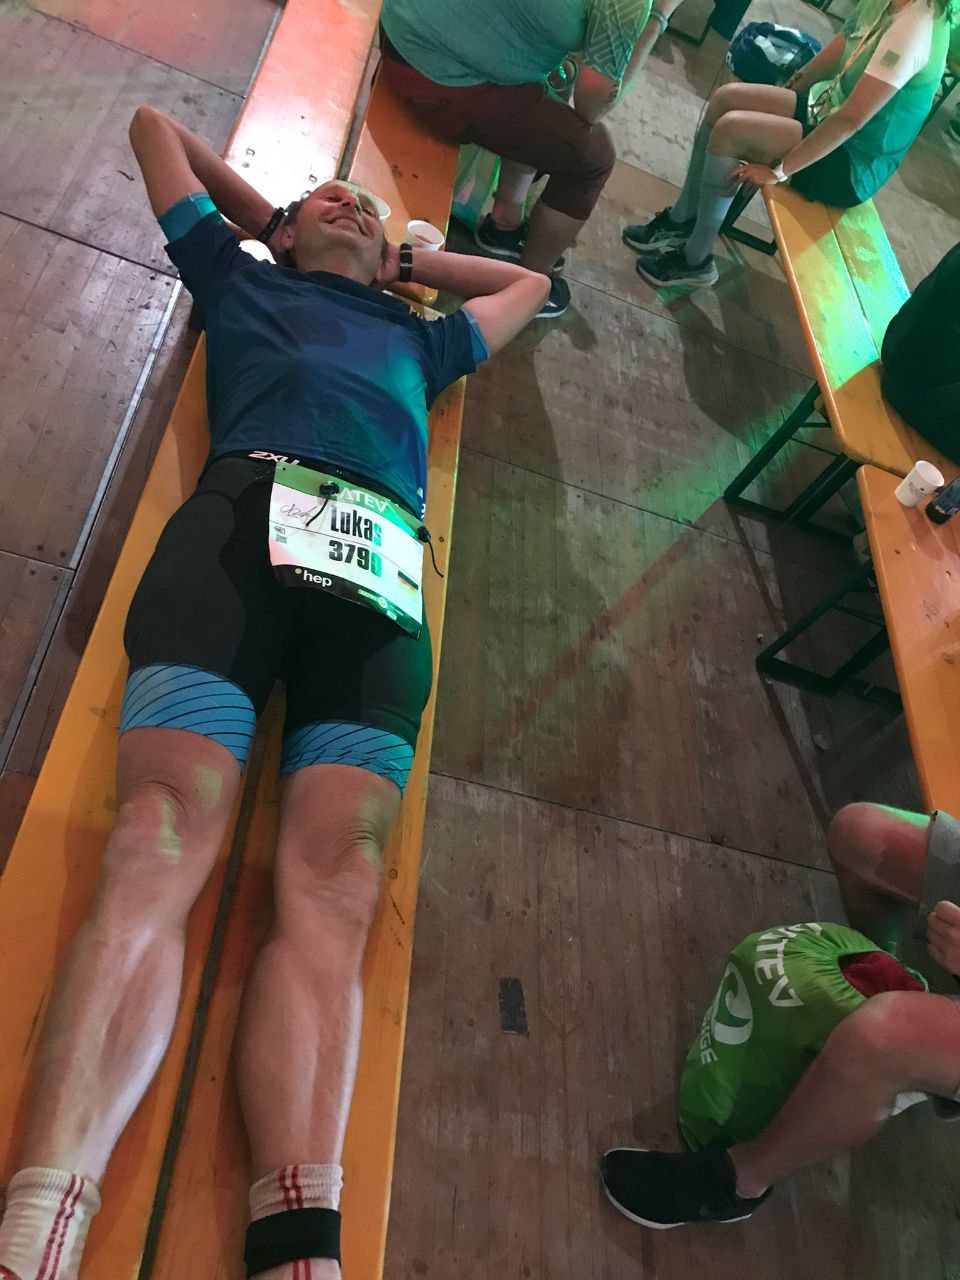 Lukas Härder - nicht am Boden aber auf der Bank - zeigt symbolisch den steinigen Weg zum Ironman